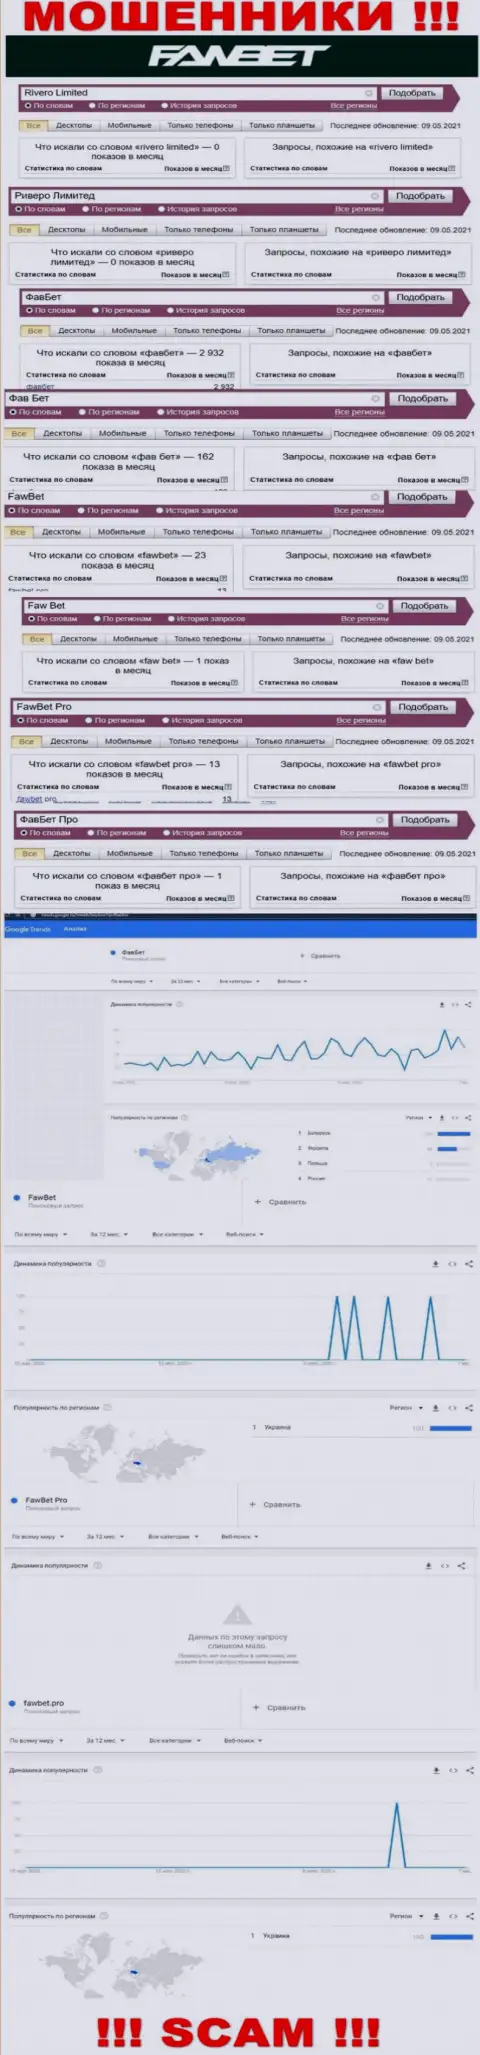 Анализ поисковых запросов, касательно аферистов FawBet, в глобальной internet сети